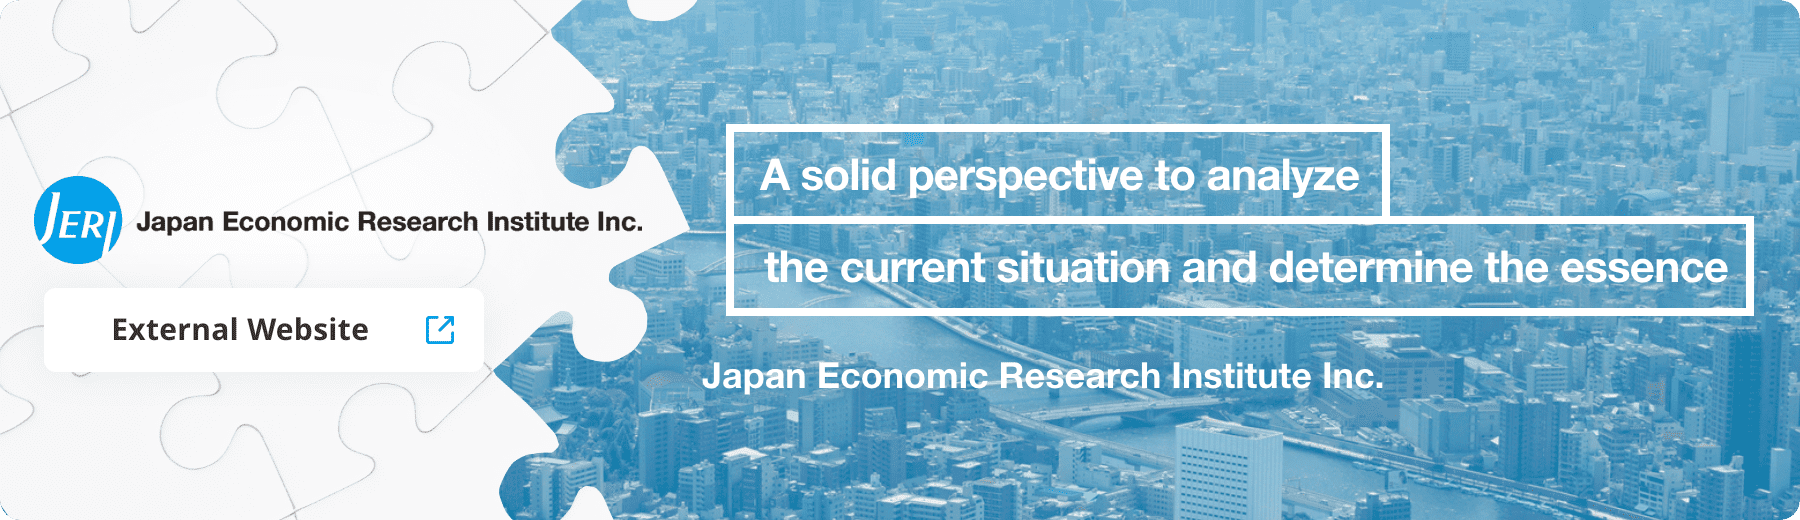 Japan Economic Research Institute, Inc.